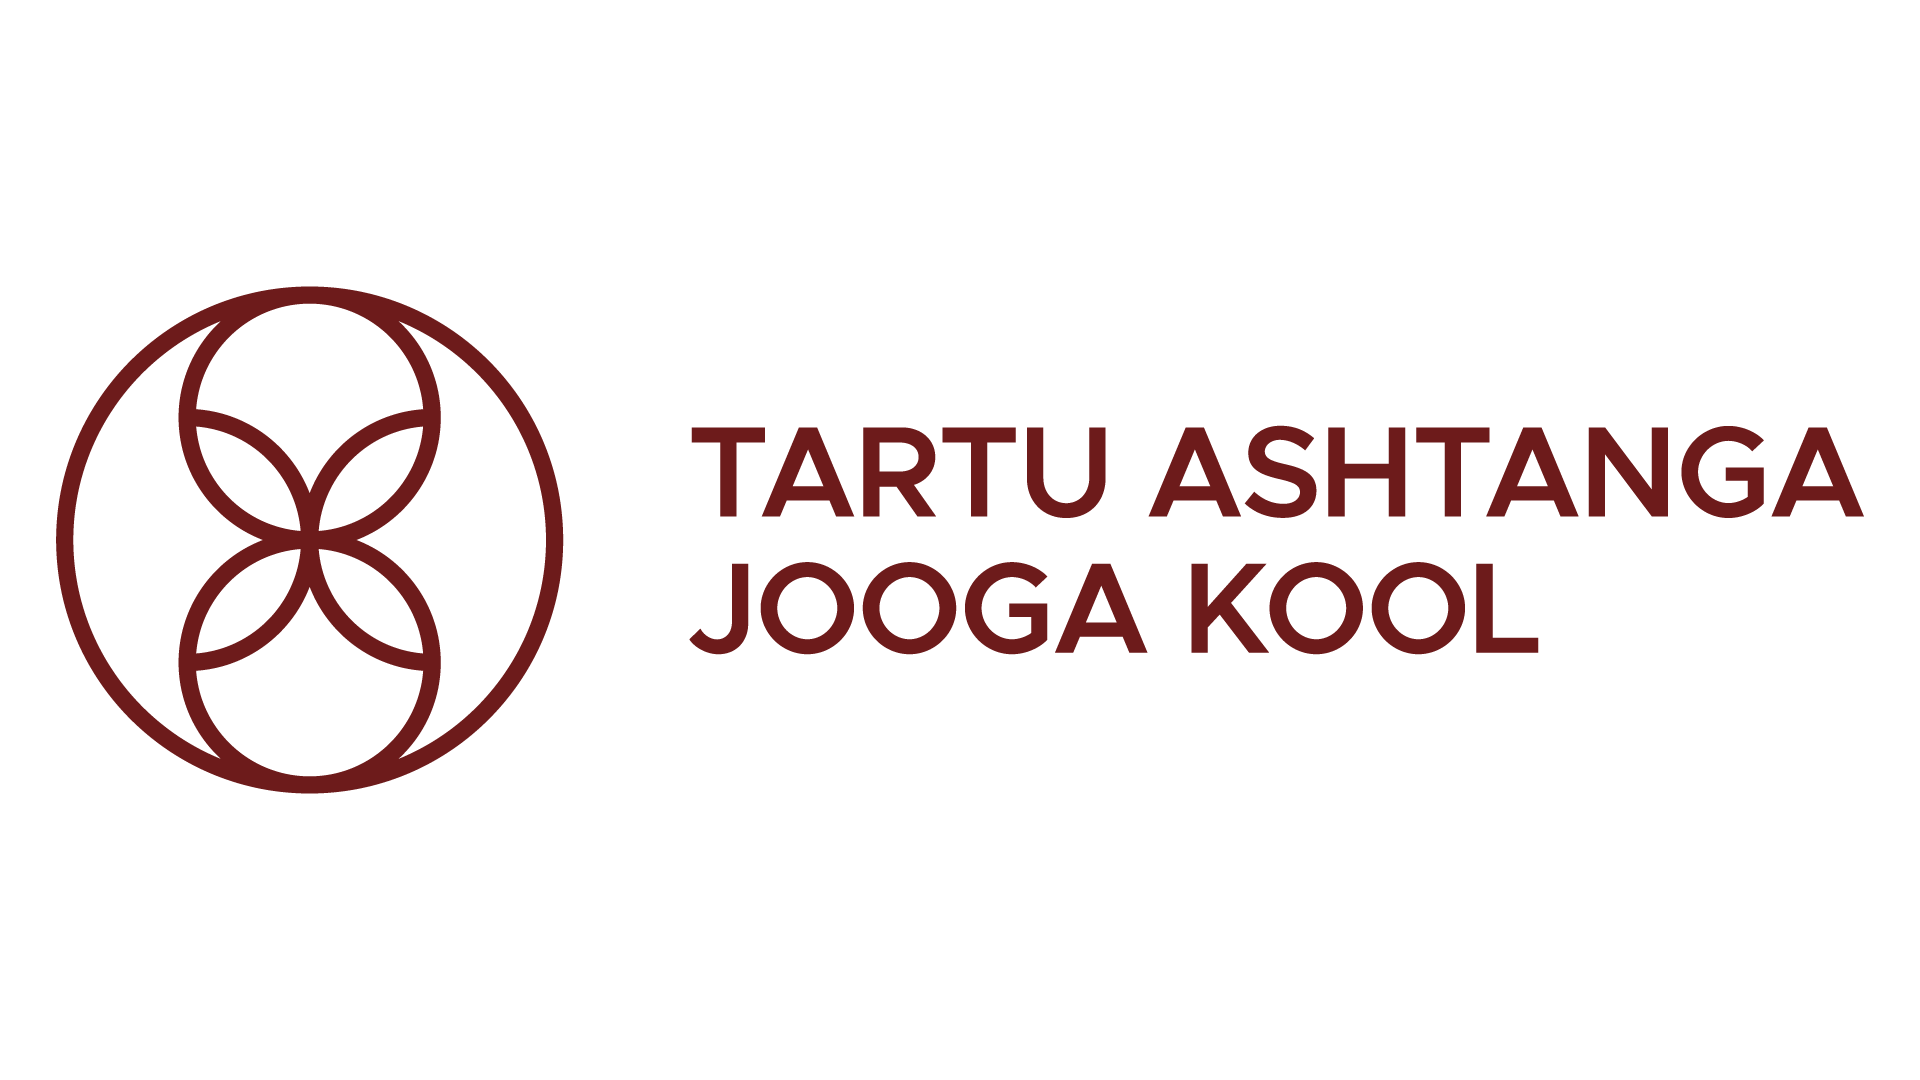 Ashtanga Tartu